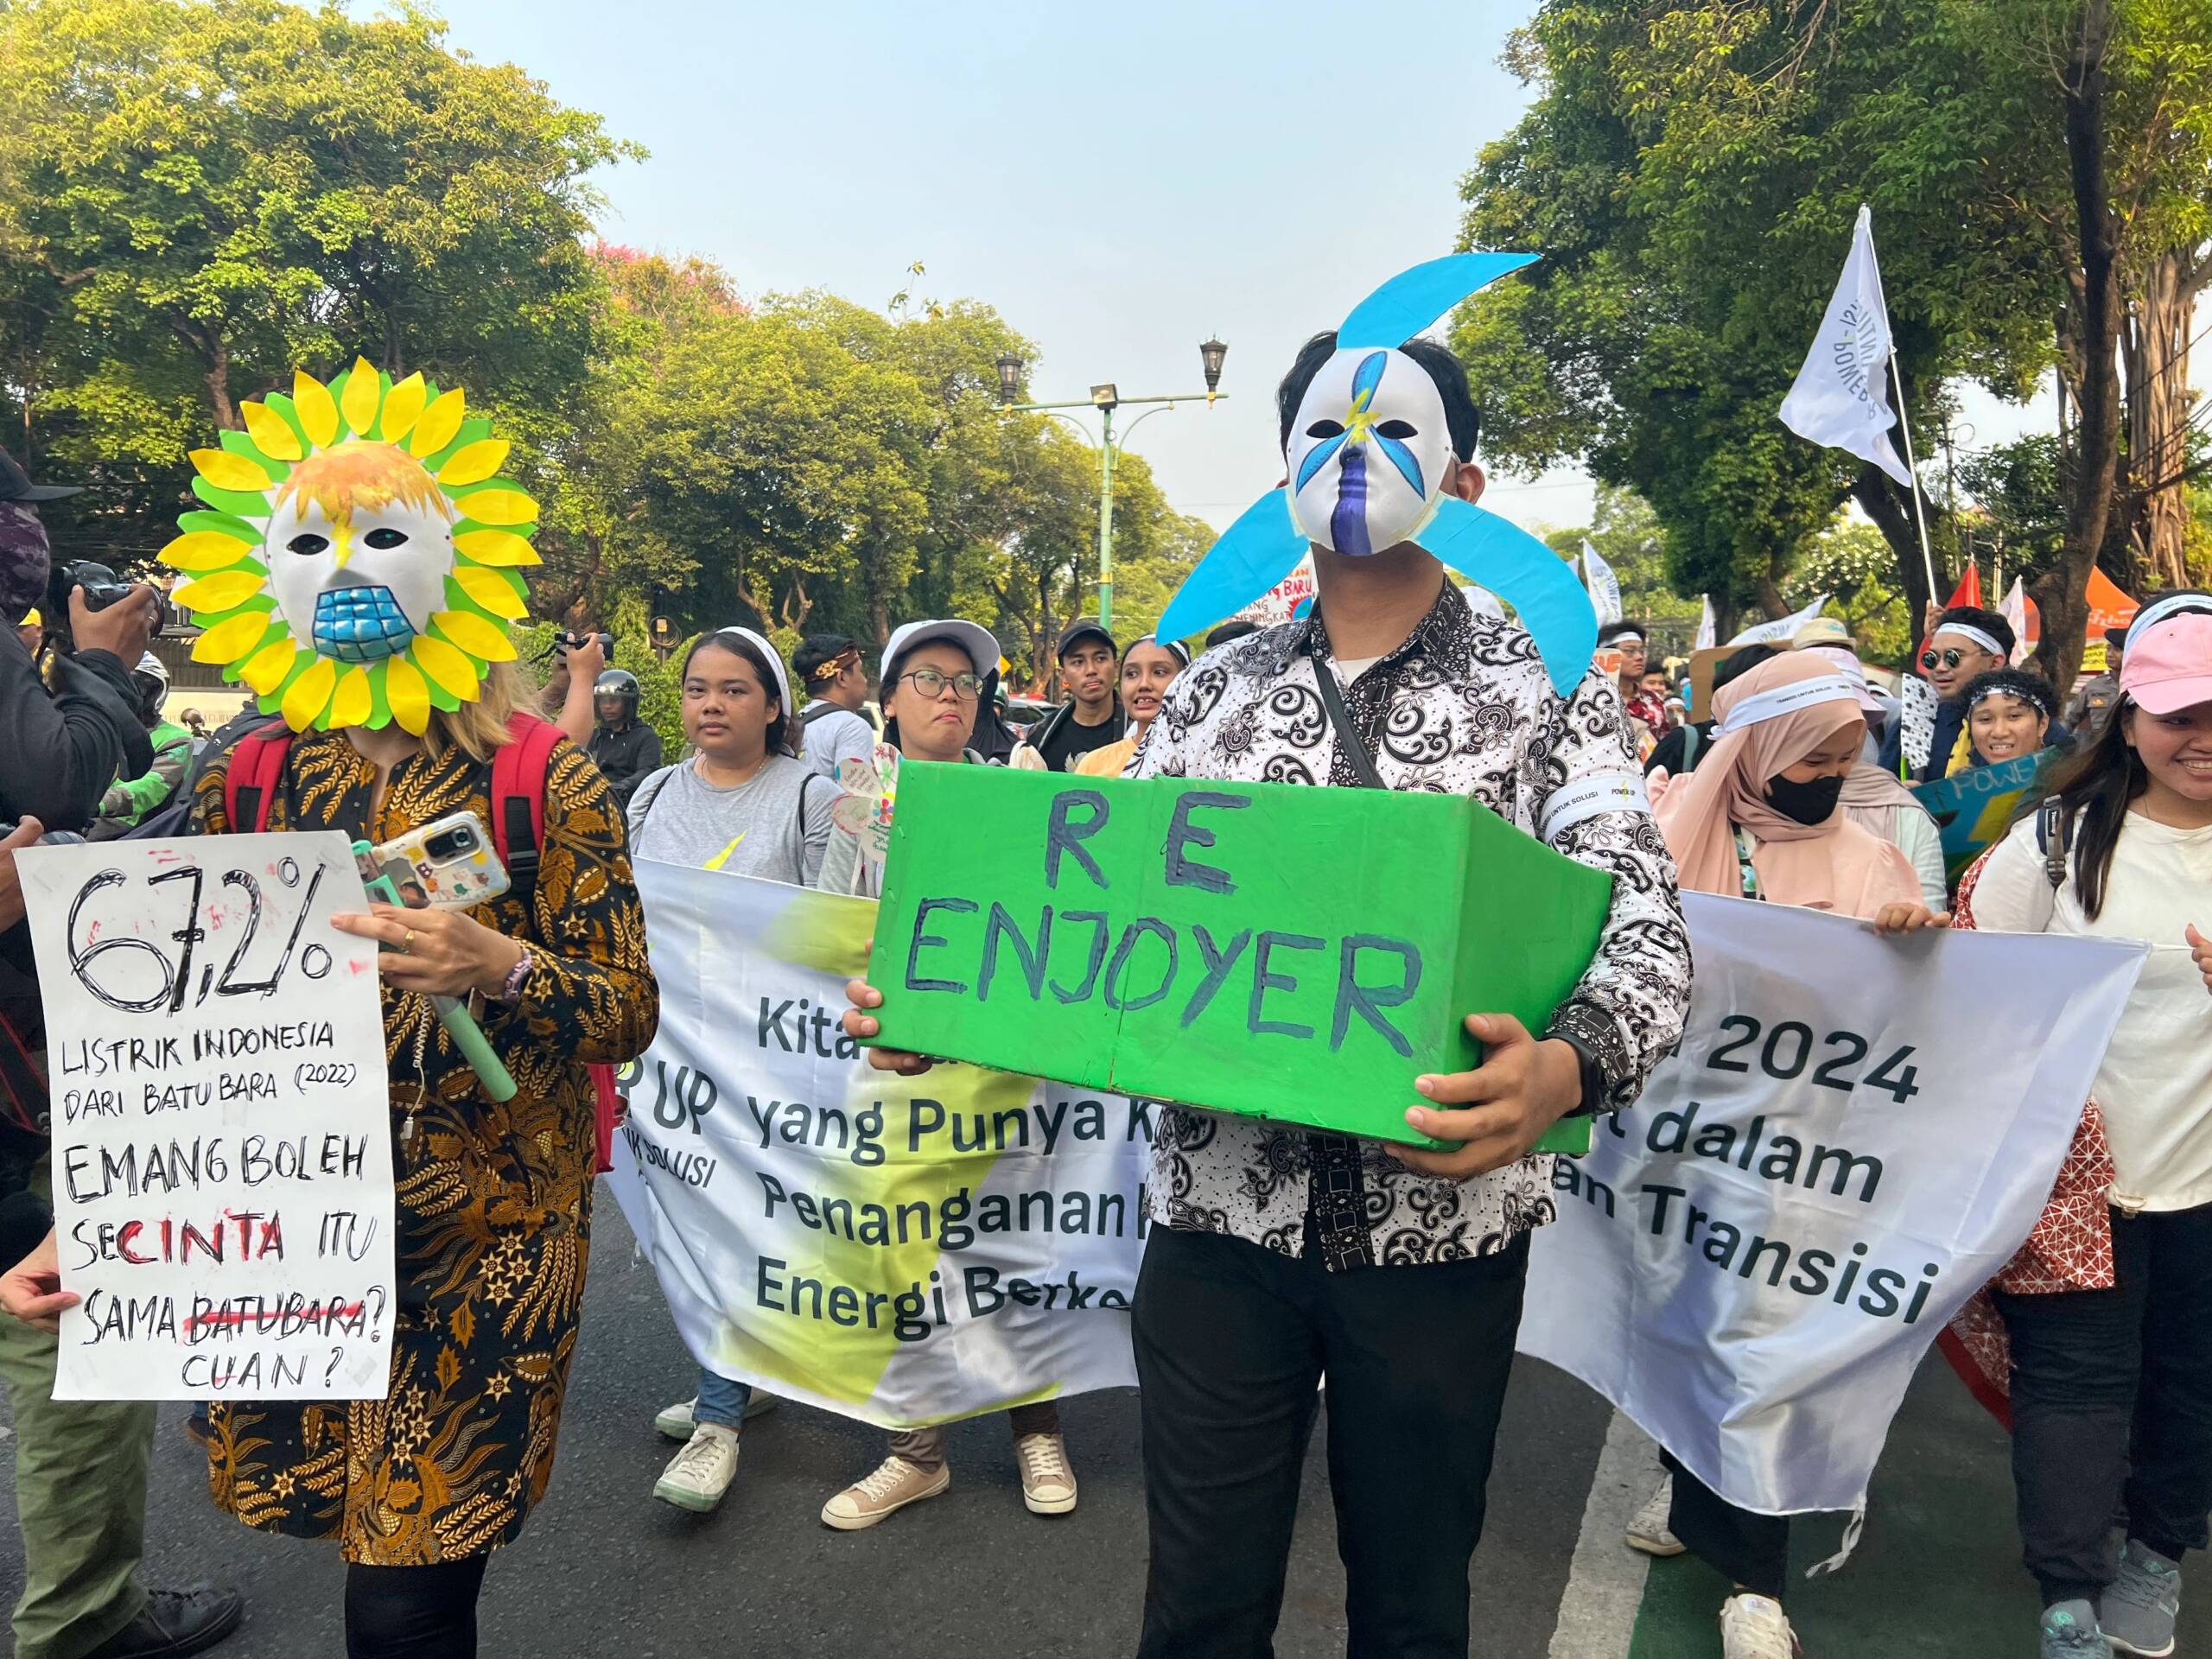 Yakarta, Indonesia, 3 de noviembre: cientos de jóvenes y adultos marcharon para exigir a los posibles candidatos presidenciales que prioricen las cuestiones medioambientales y una transición energética justa en las elecciones del próximo año. Créditos: Kathleen Lei Limayo